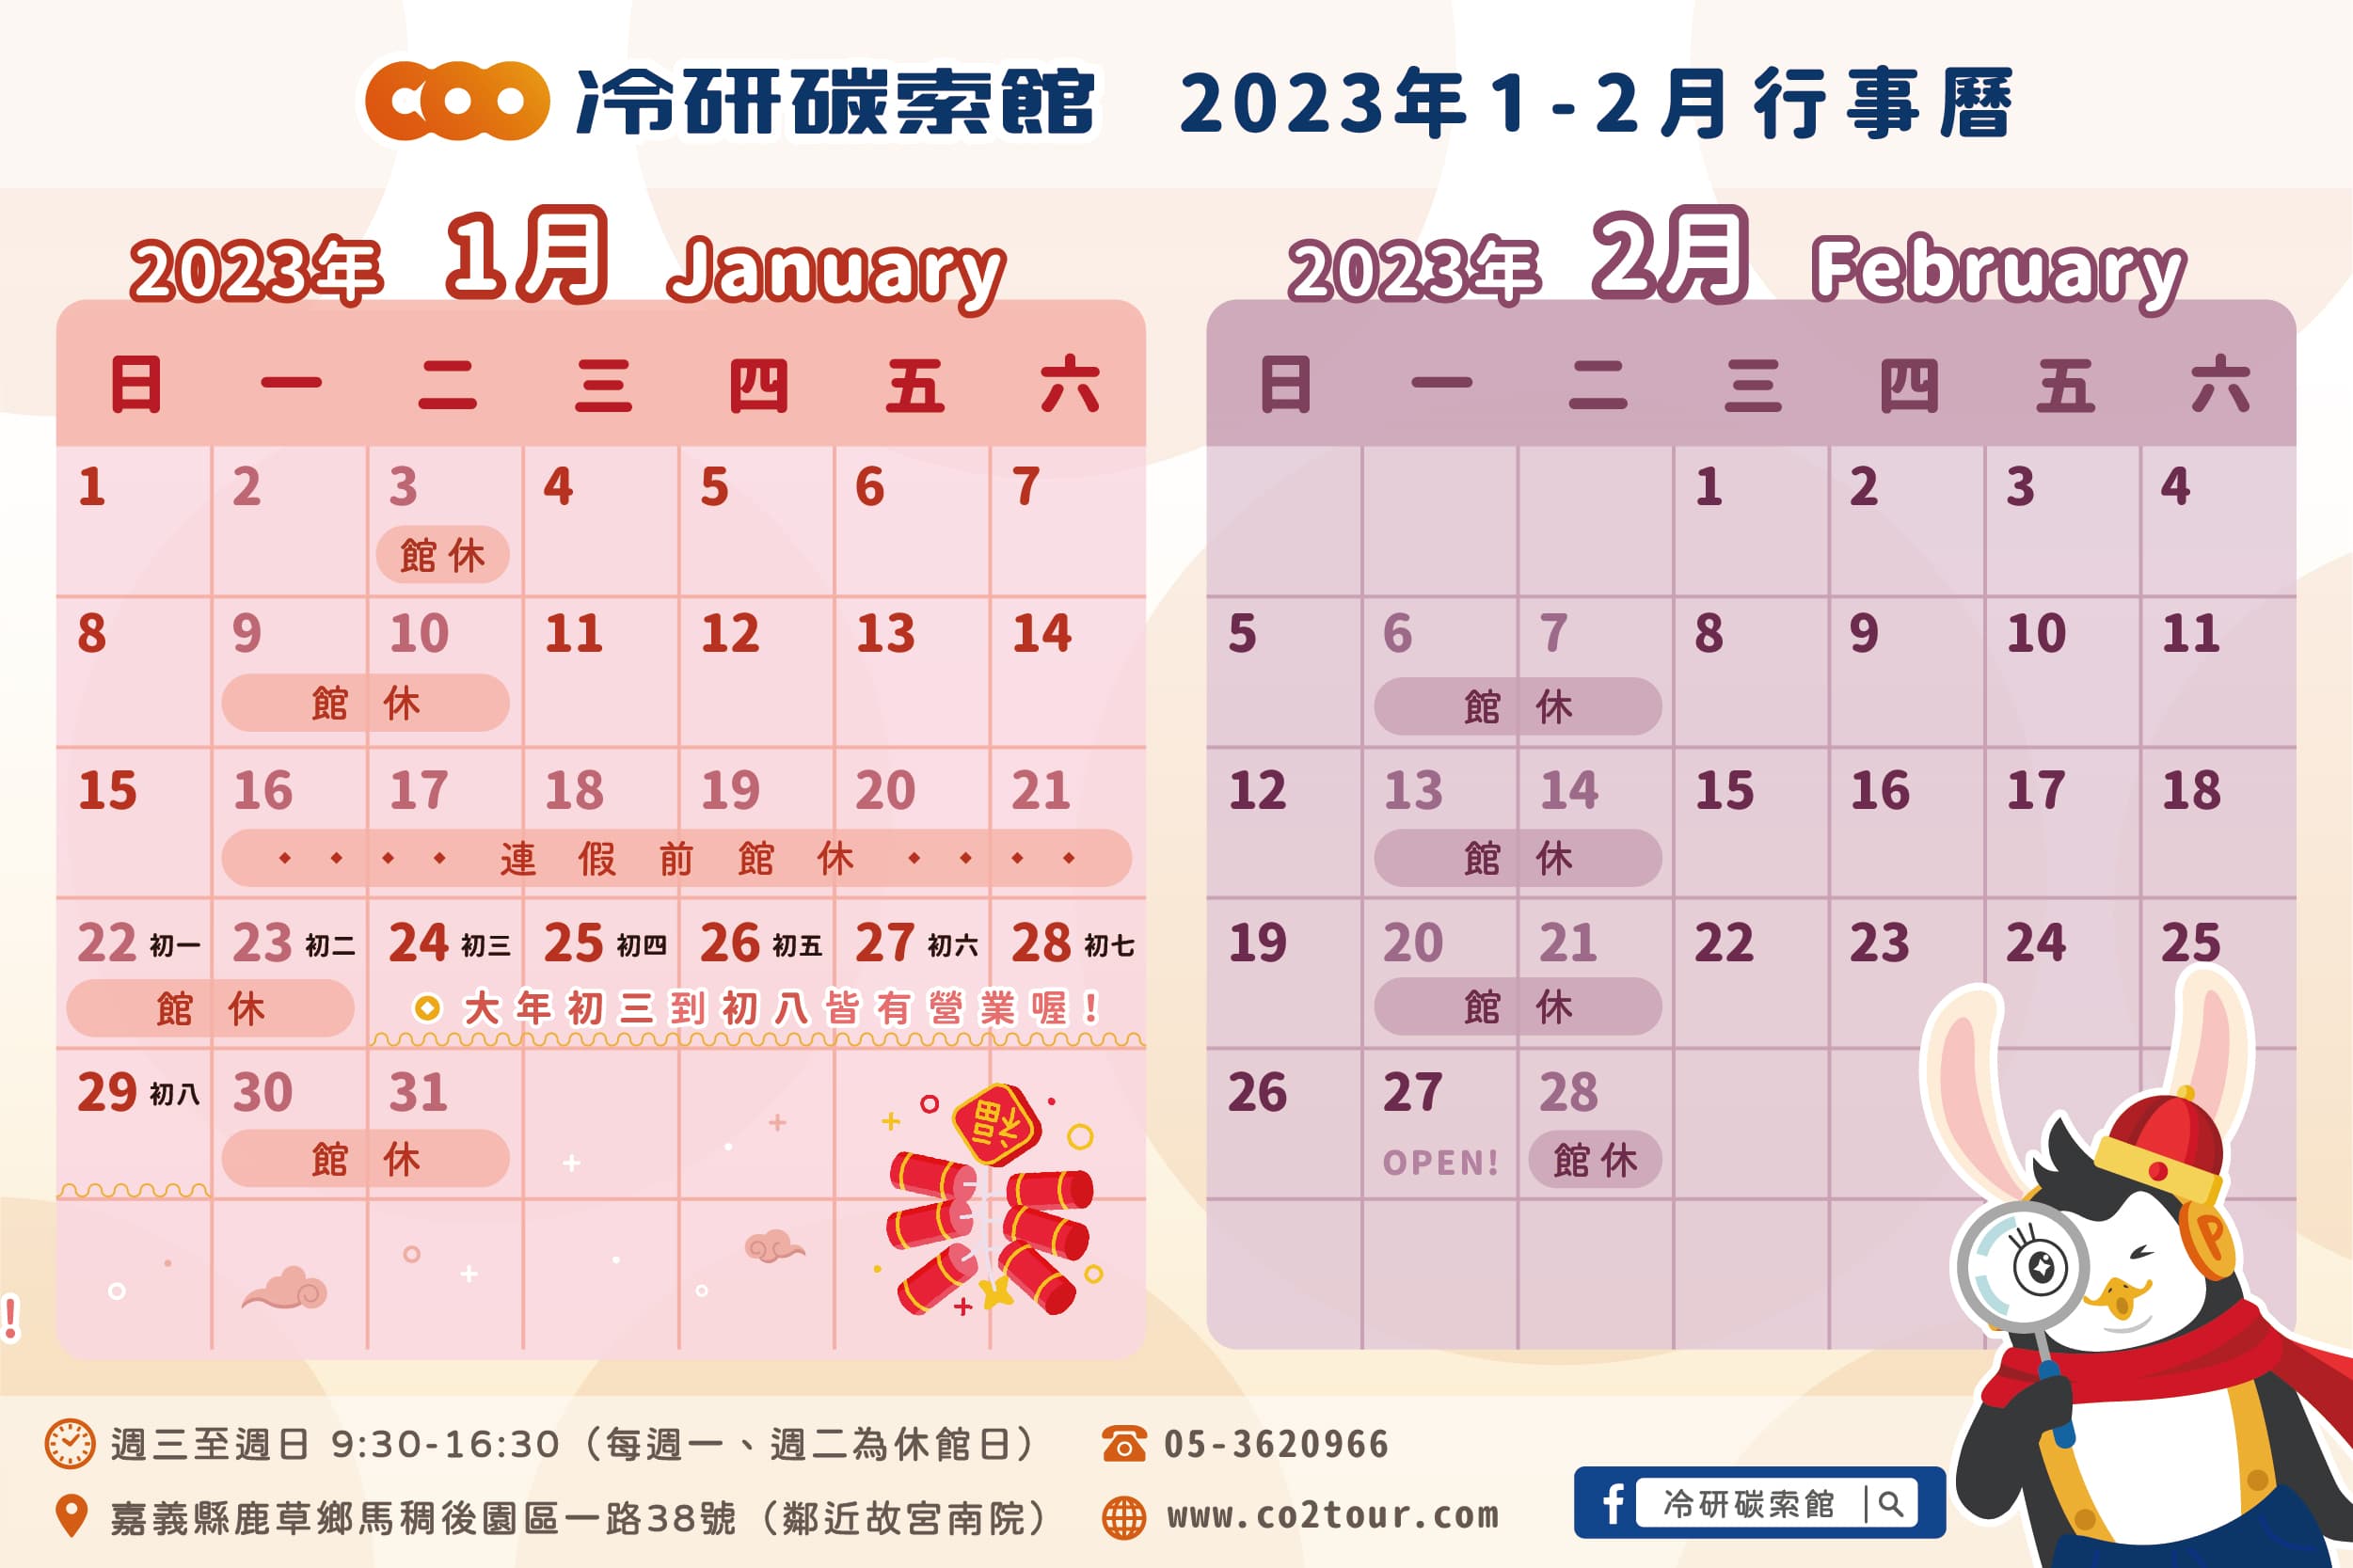 2023年1-2月行事曆